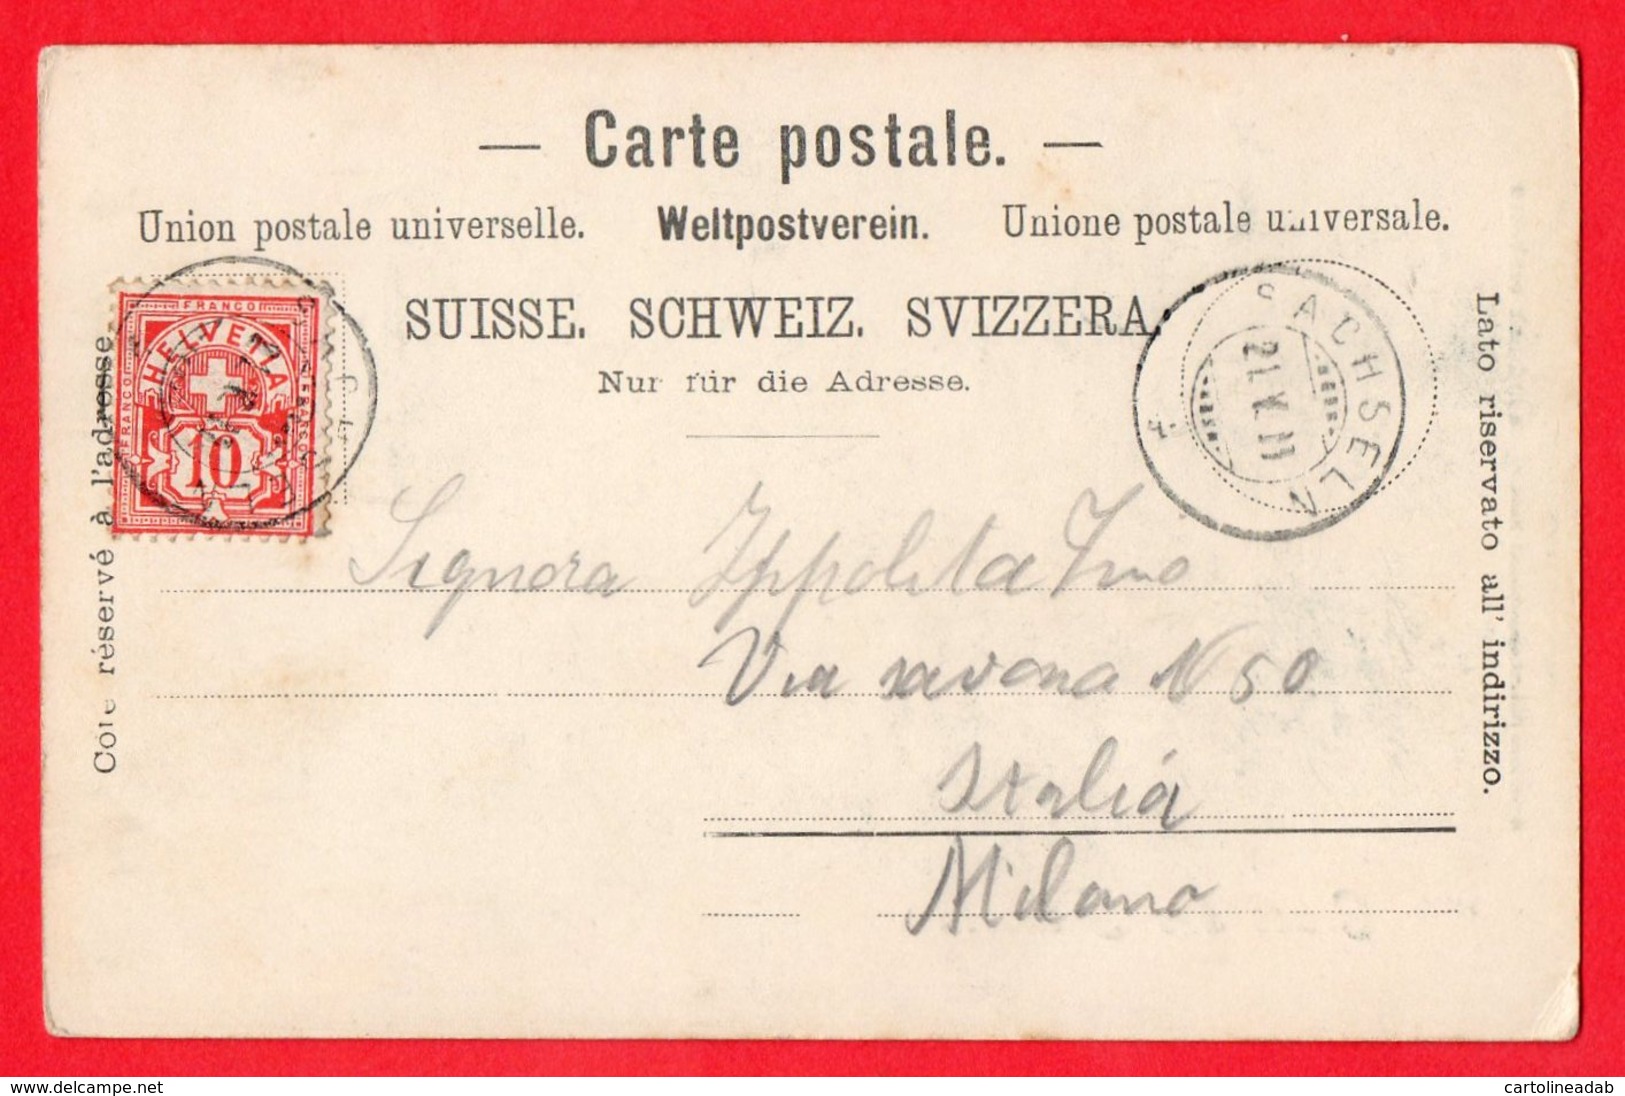 [DC6021] CPA - SVIZZERA - GRUSS AUS SACHSELN - INNERES DER PFARRKIRCHE - Viaggiata 1900 - Old Postcard - Sachseln